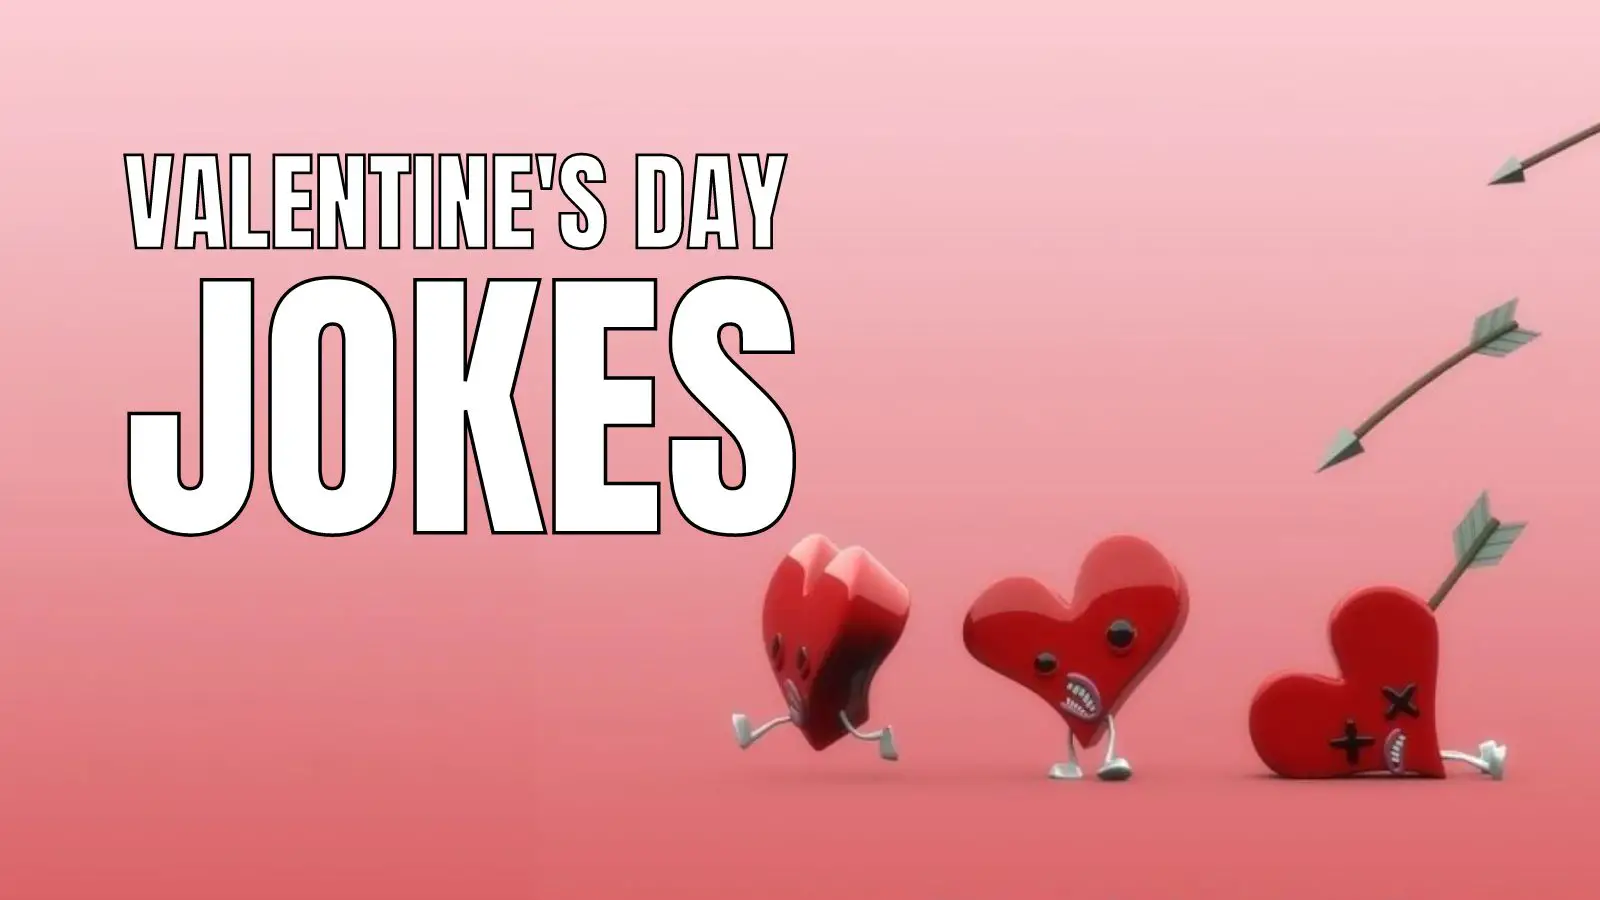 80 Funny Valentine's Day Jokes For Him & Her - HumorNama